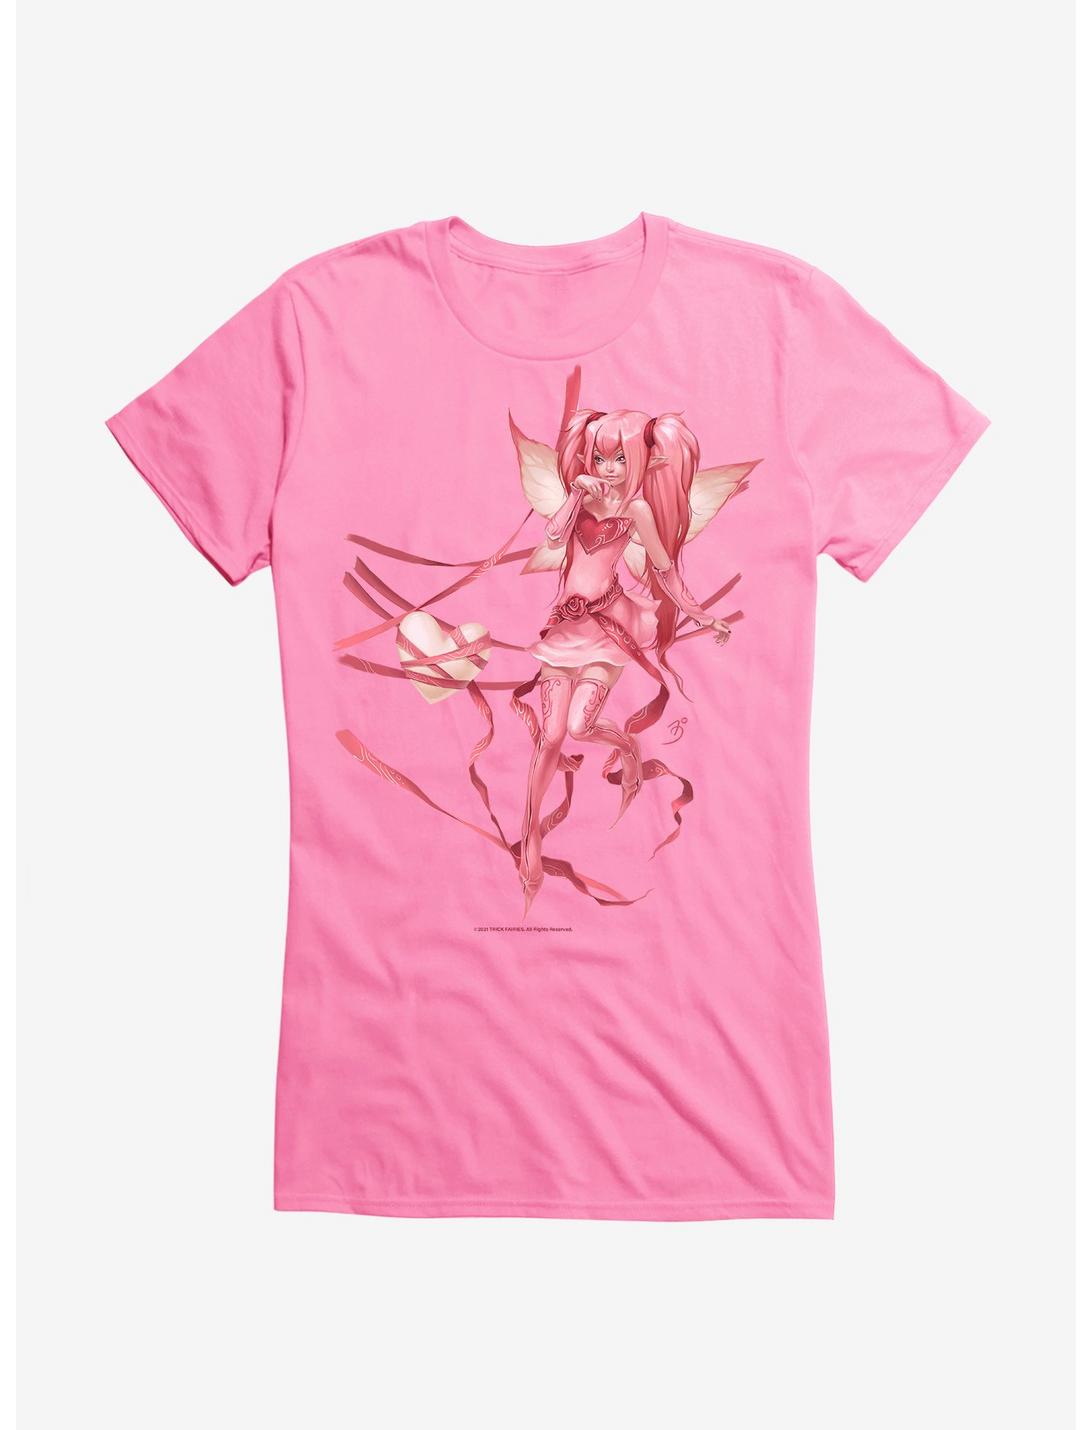 Fairies By Trick Ribbon Fairy Girls T-Shirt, , hi-res